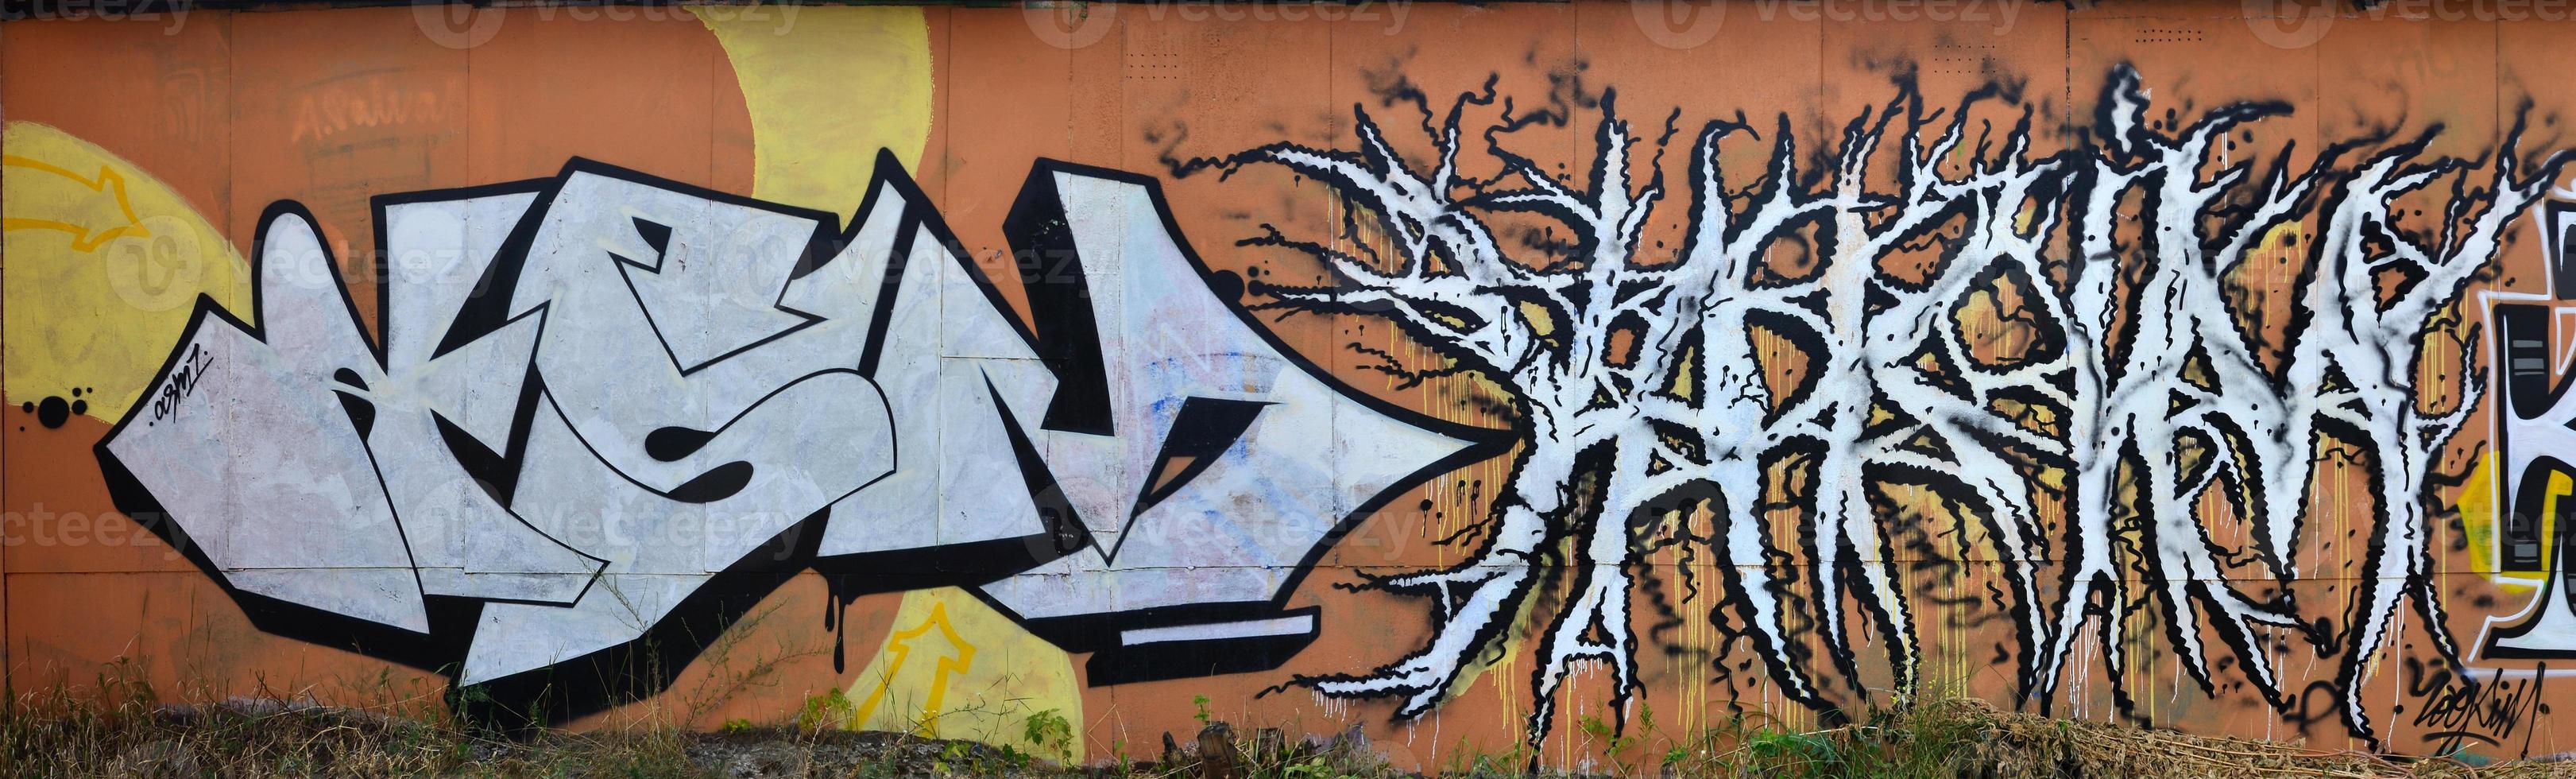 en Foto av flera graffiti konstverk på de metall vägg. graffiti ritningar är tillverkad med vit måla med svart konturer och ha ett orange bakgrund. textur av vägg med graffiti dekoration